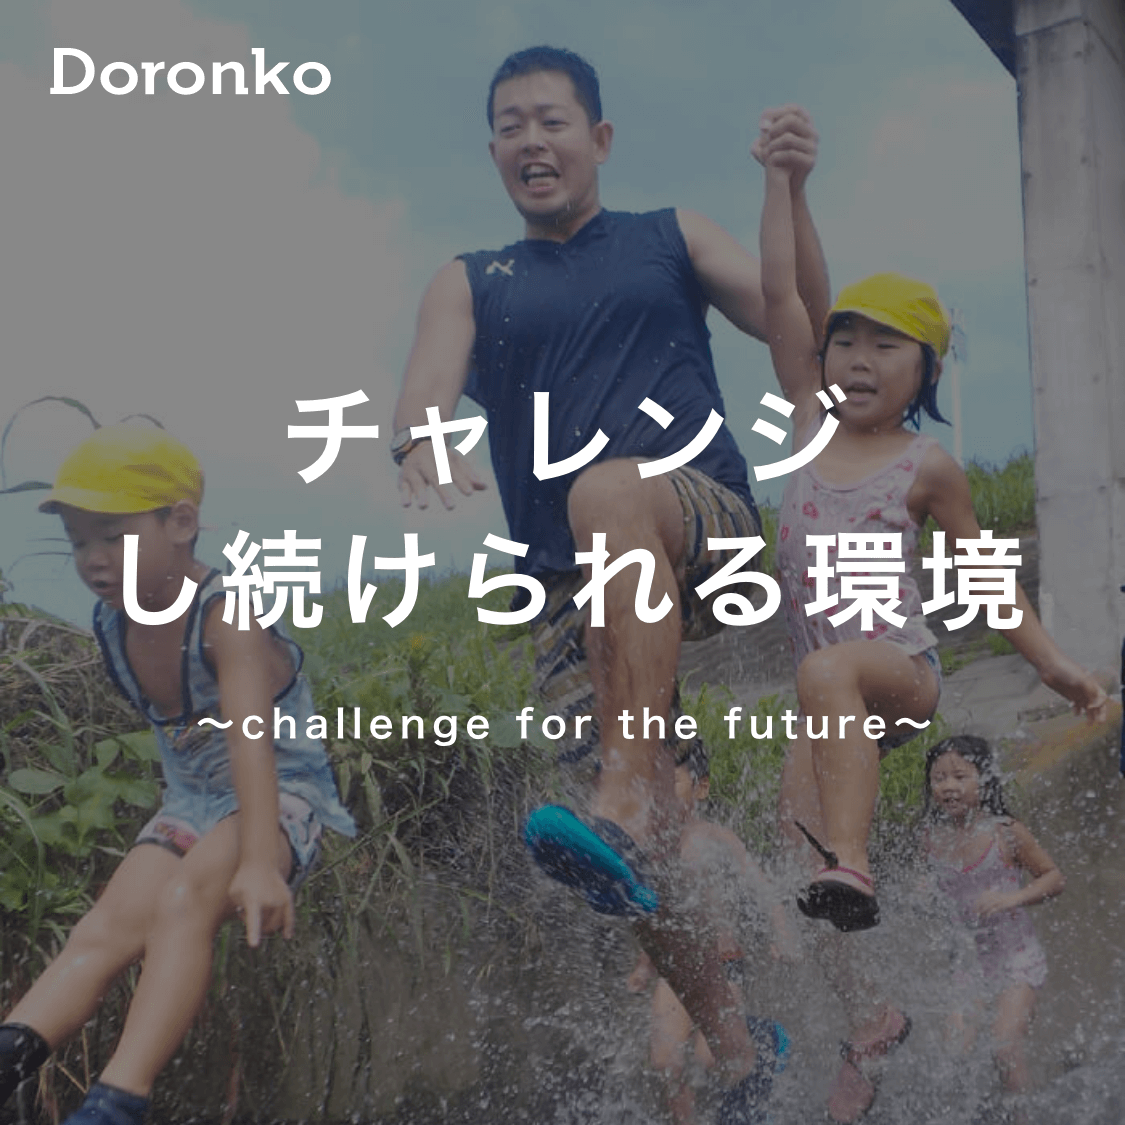 チャレンジし続けられる環境〜challenge for the future〜